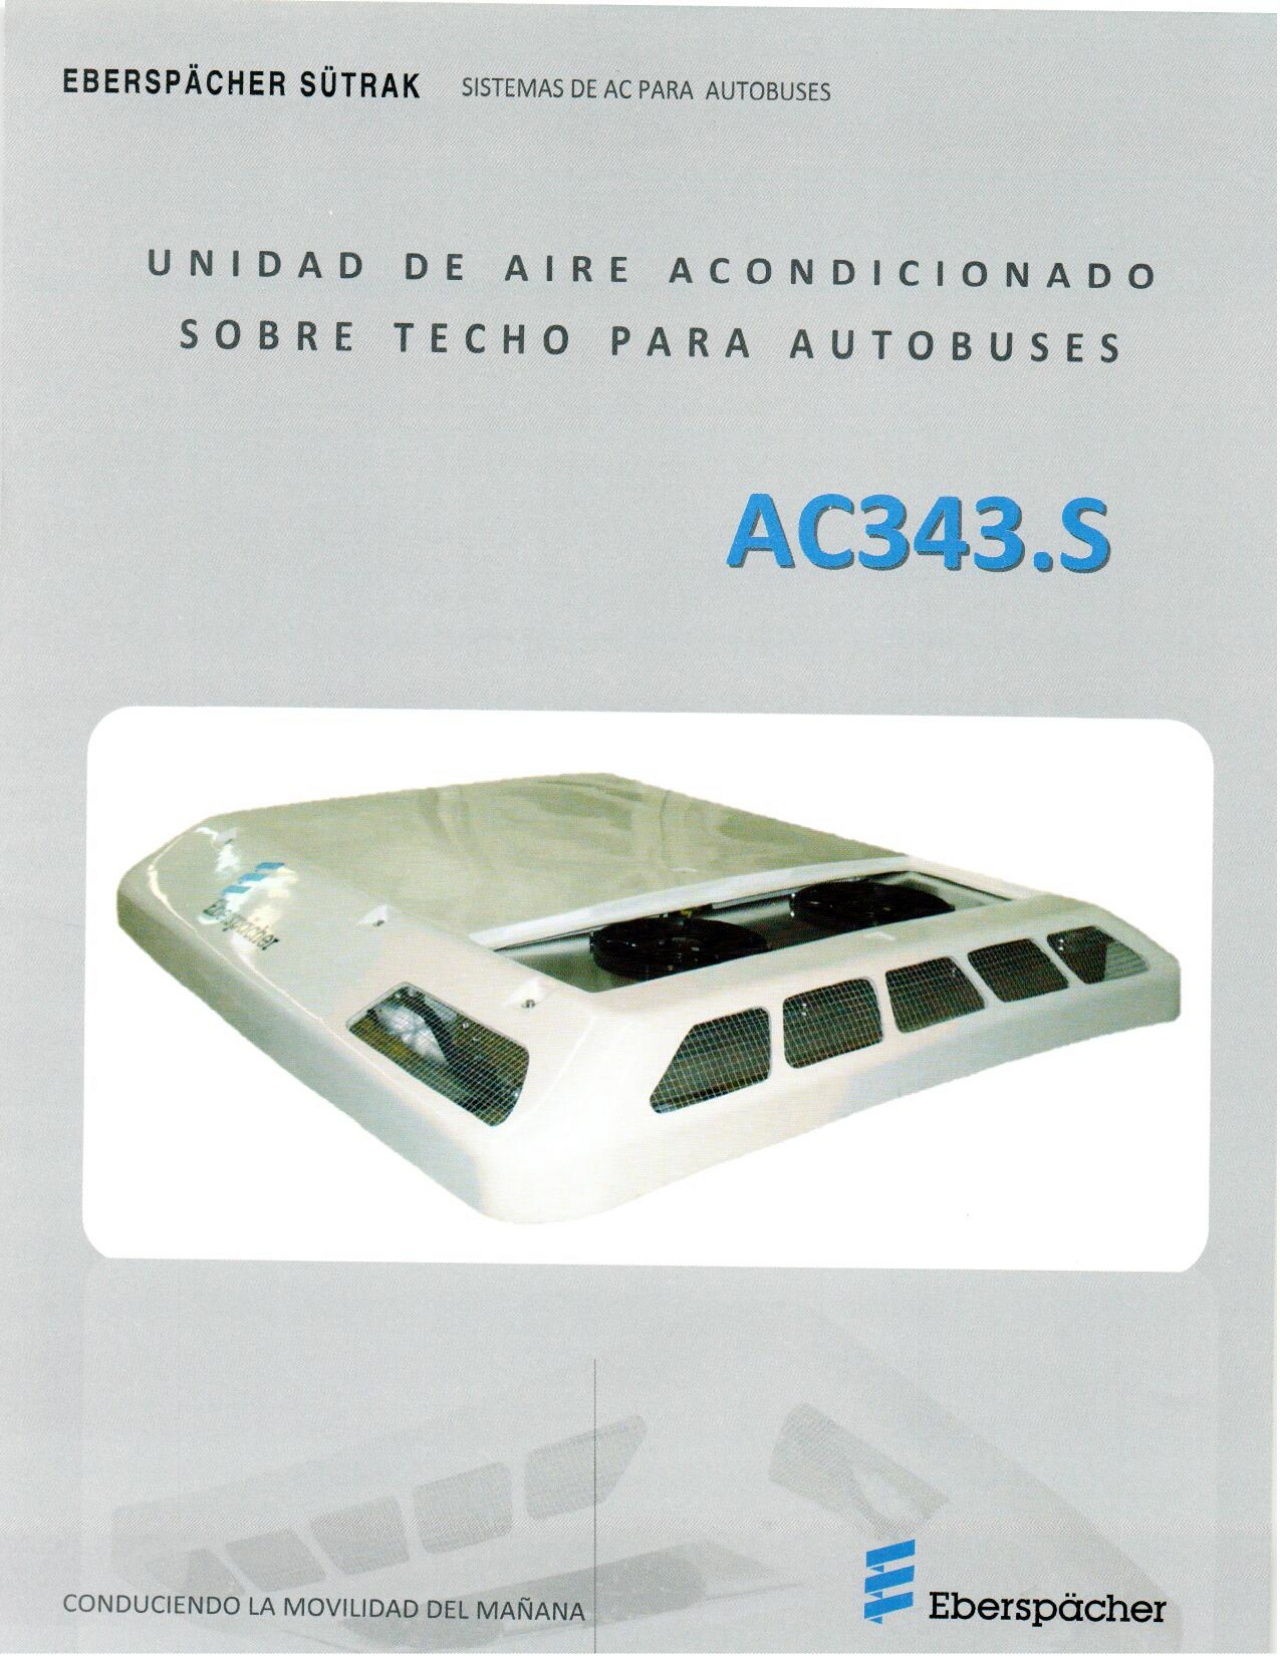 AC343.S